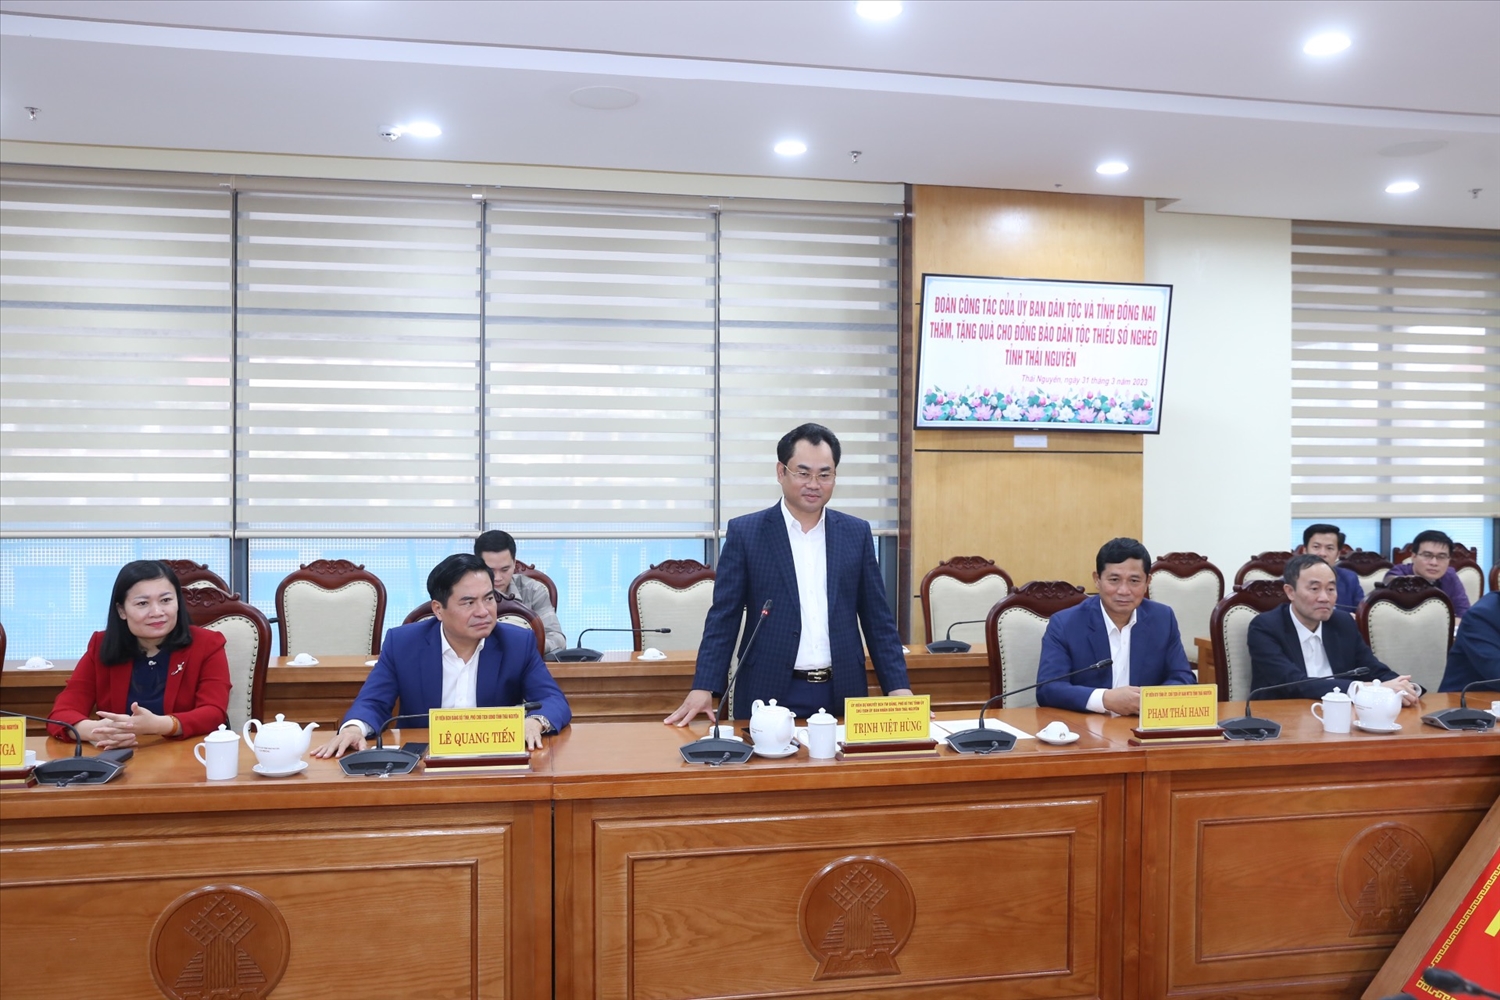 Đồng chí Trịnh Việt Hùng, Phó Bí thư Tỉnh ủy, Chủ tịch UBND tỉnh Thái Nguyên phát biểu cảm ơn đoàn công tác